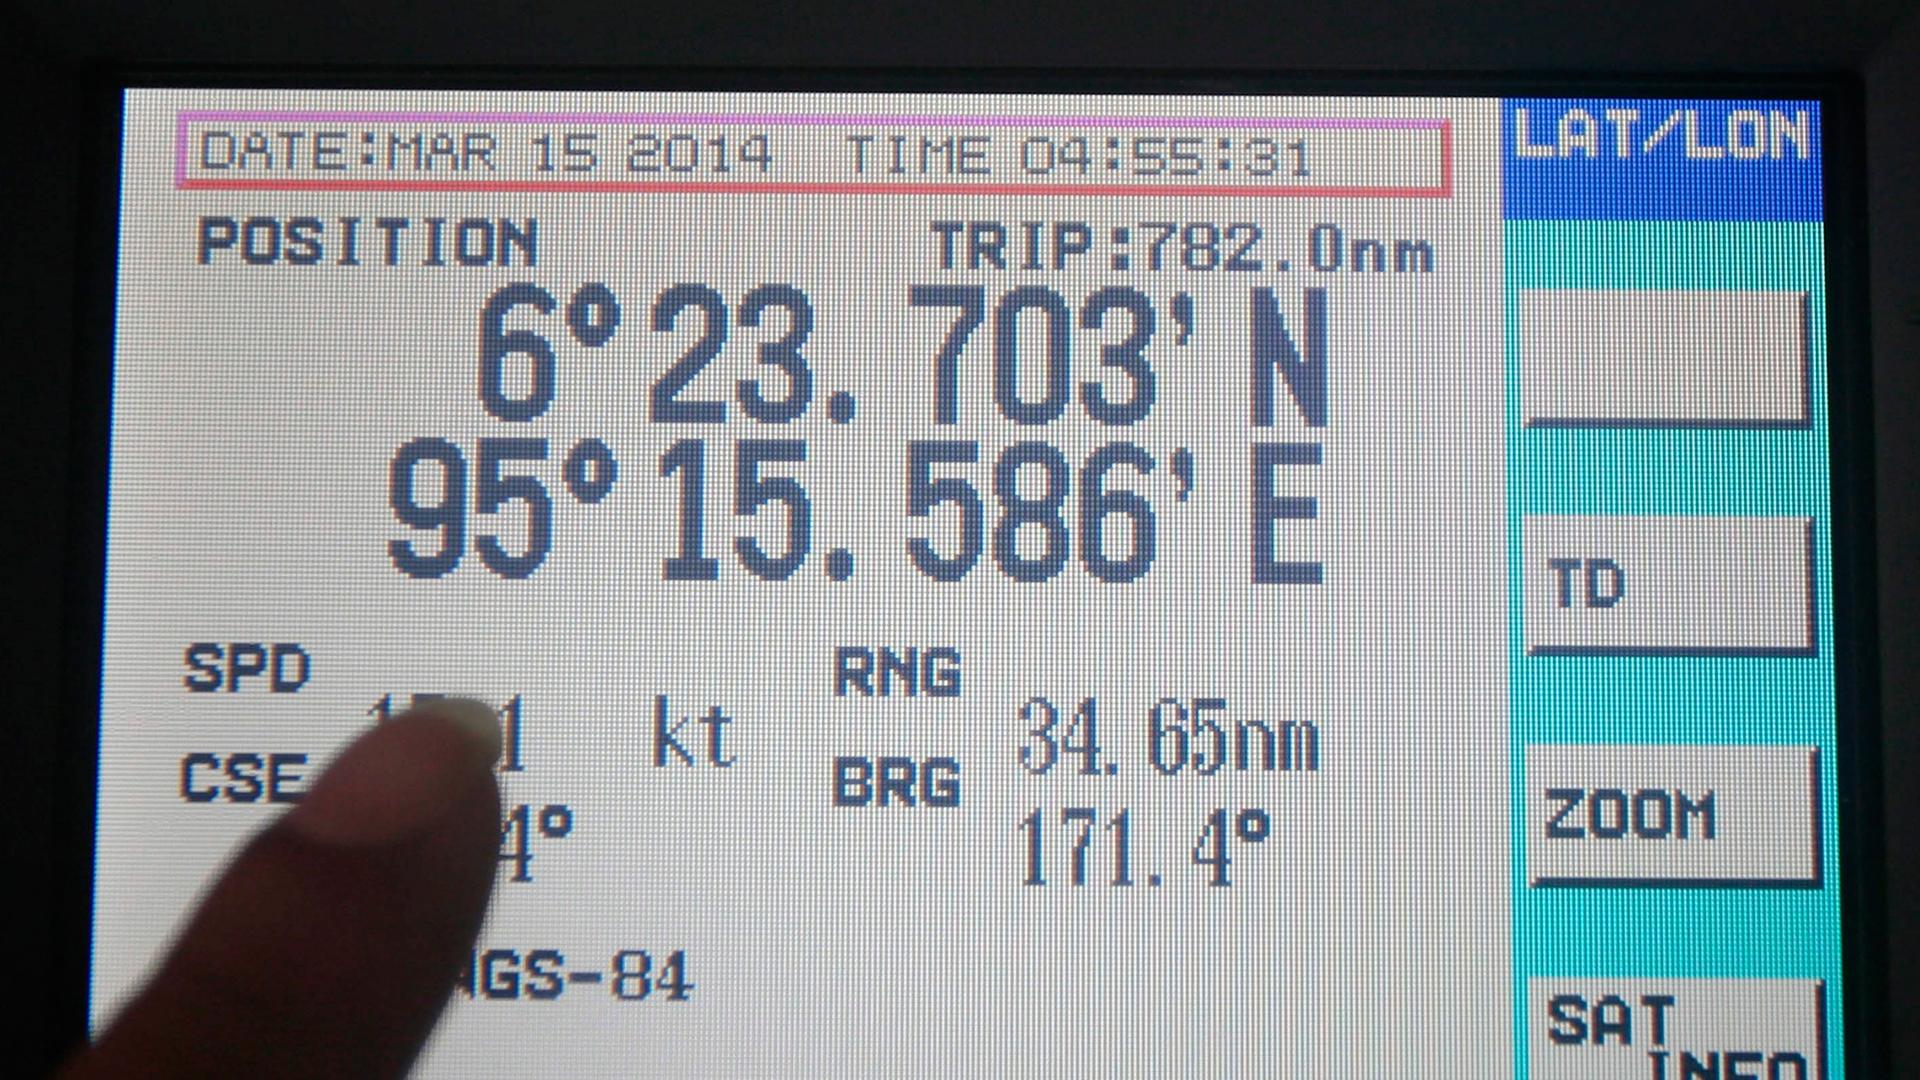 Ein Bildschirm eines Navigationssystems, mit dem nach dem vermissten Passagierflugzeug gesucht wird.